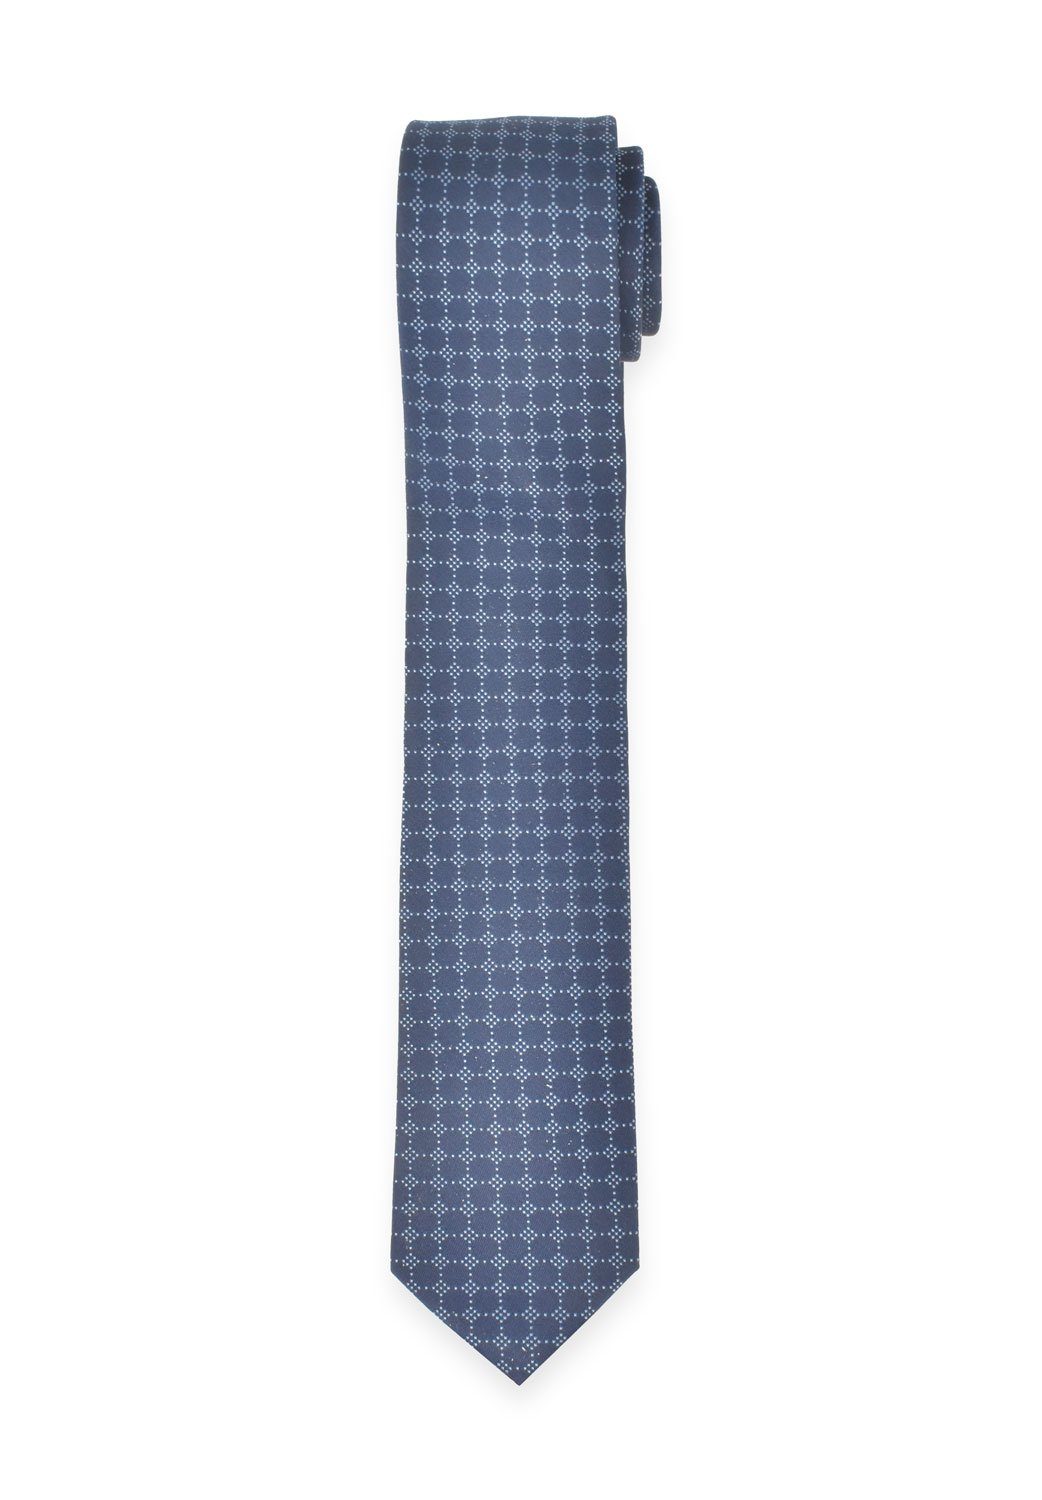 - cm 6,5 MARVELIS Hellblau/Dunkelblau Krawatte - Punkte - Krawatte